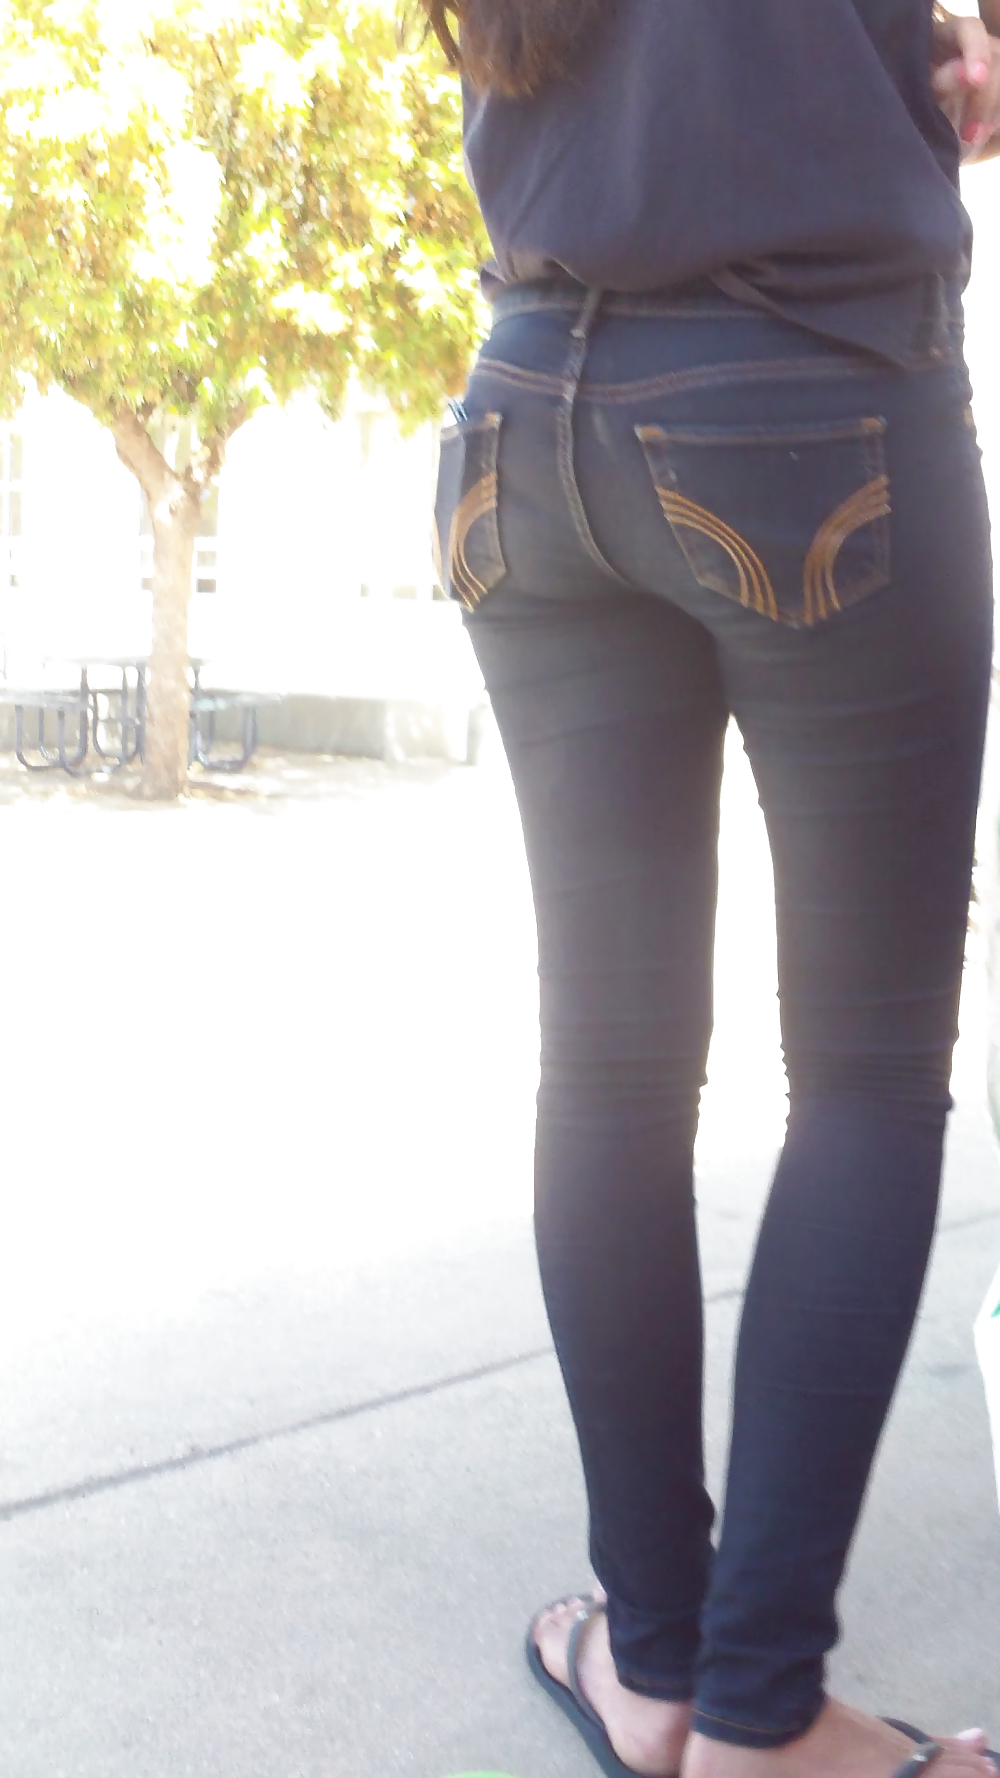 Teen ass & butt in jean shorts shopping #18777124